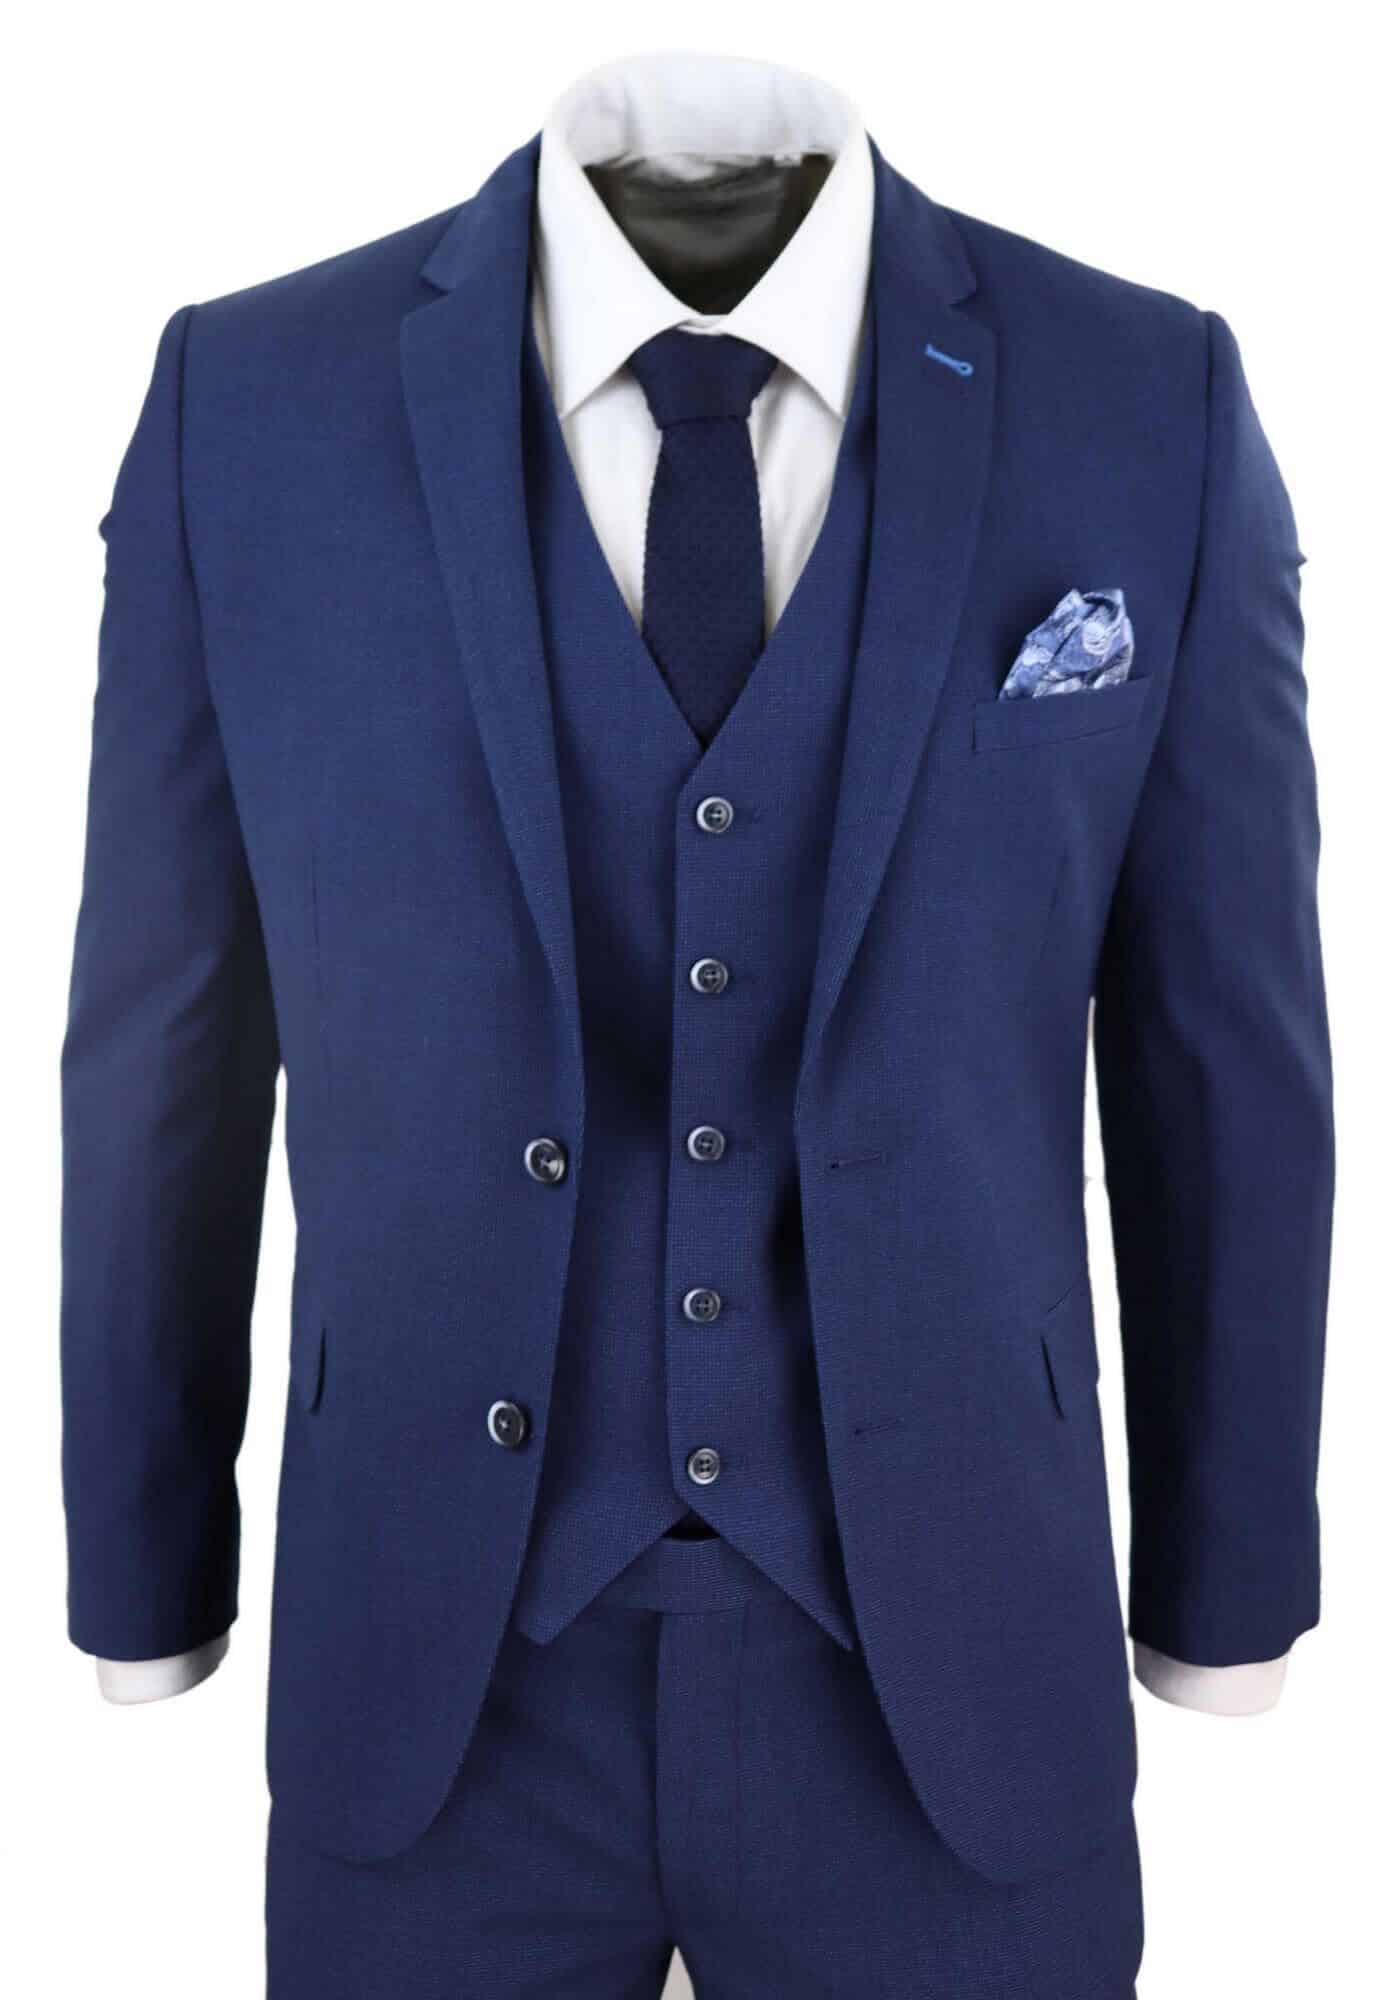 Mens Navy Blue 3 Piece Wedding Suit Buy Online Happy Gentleman